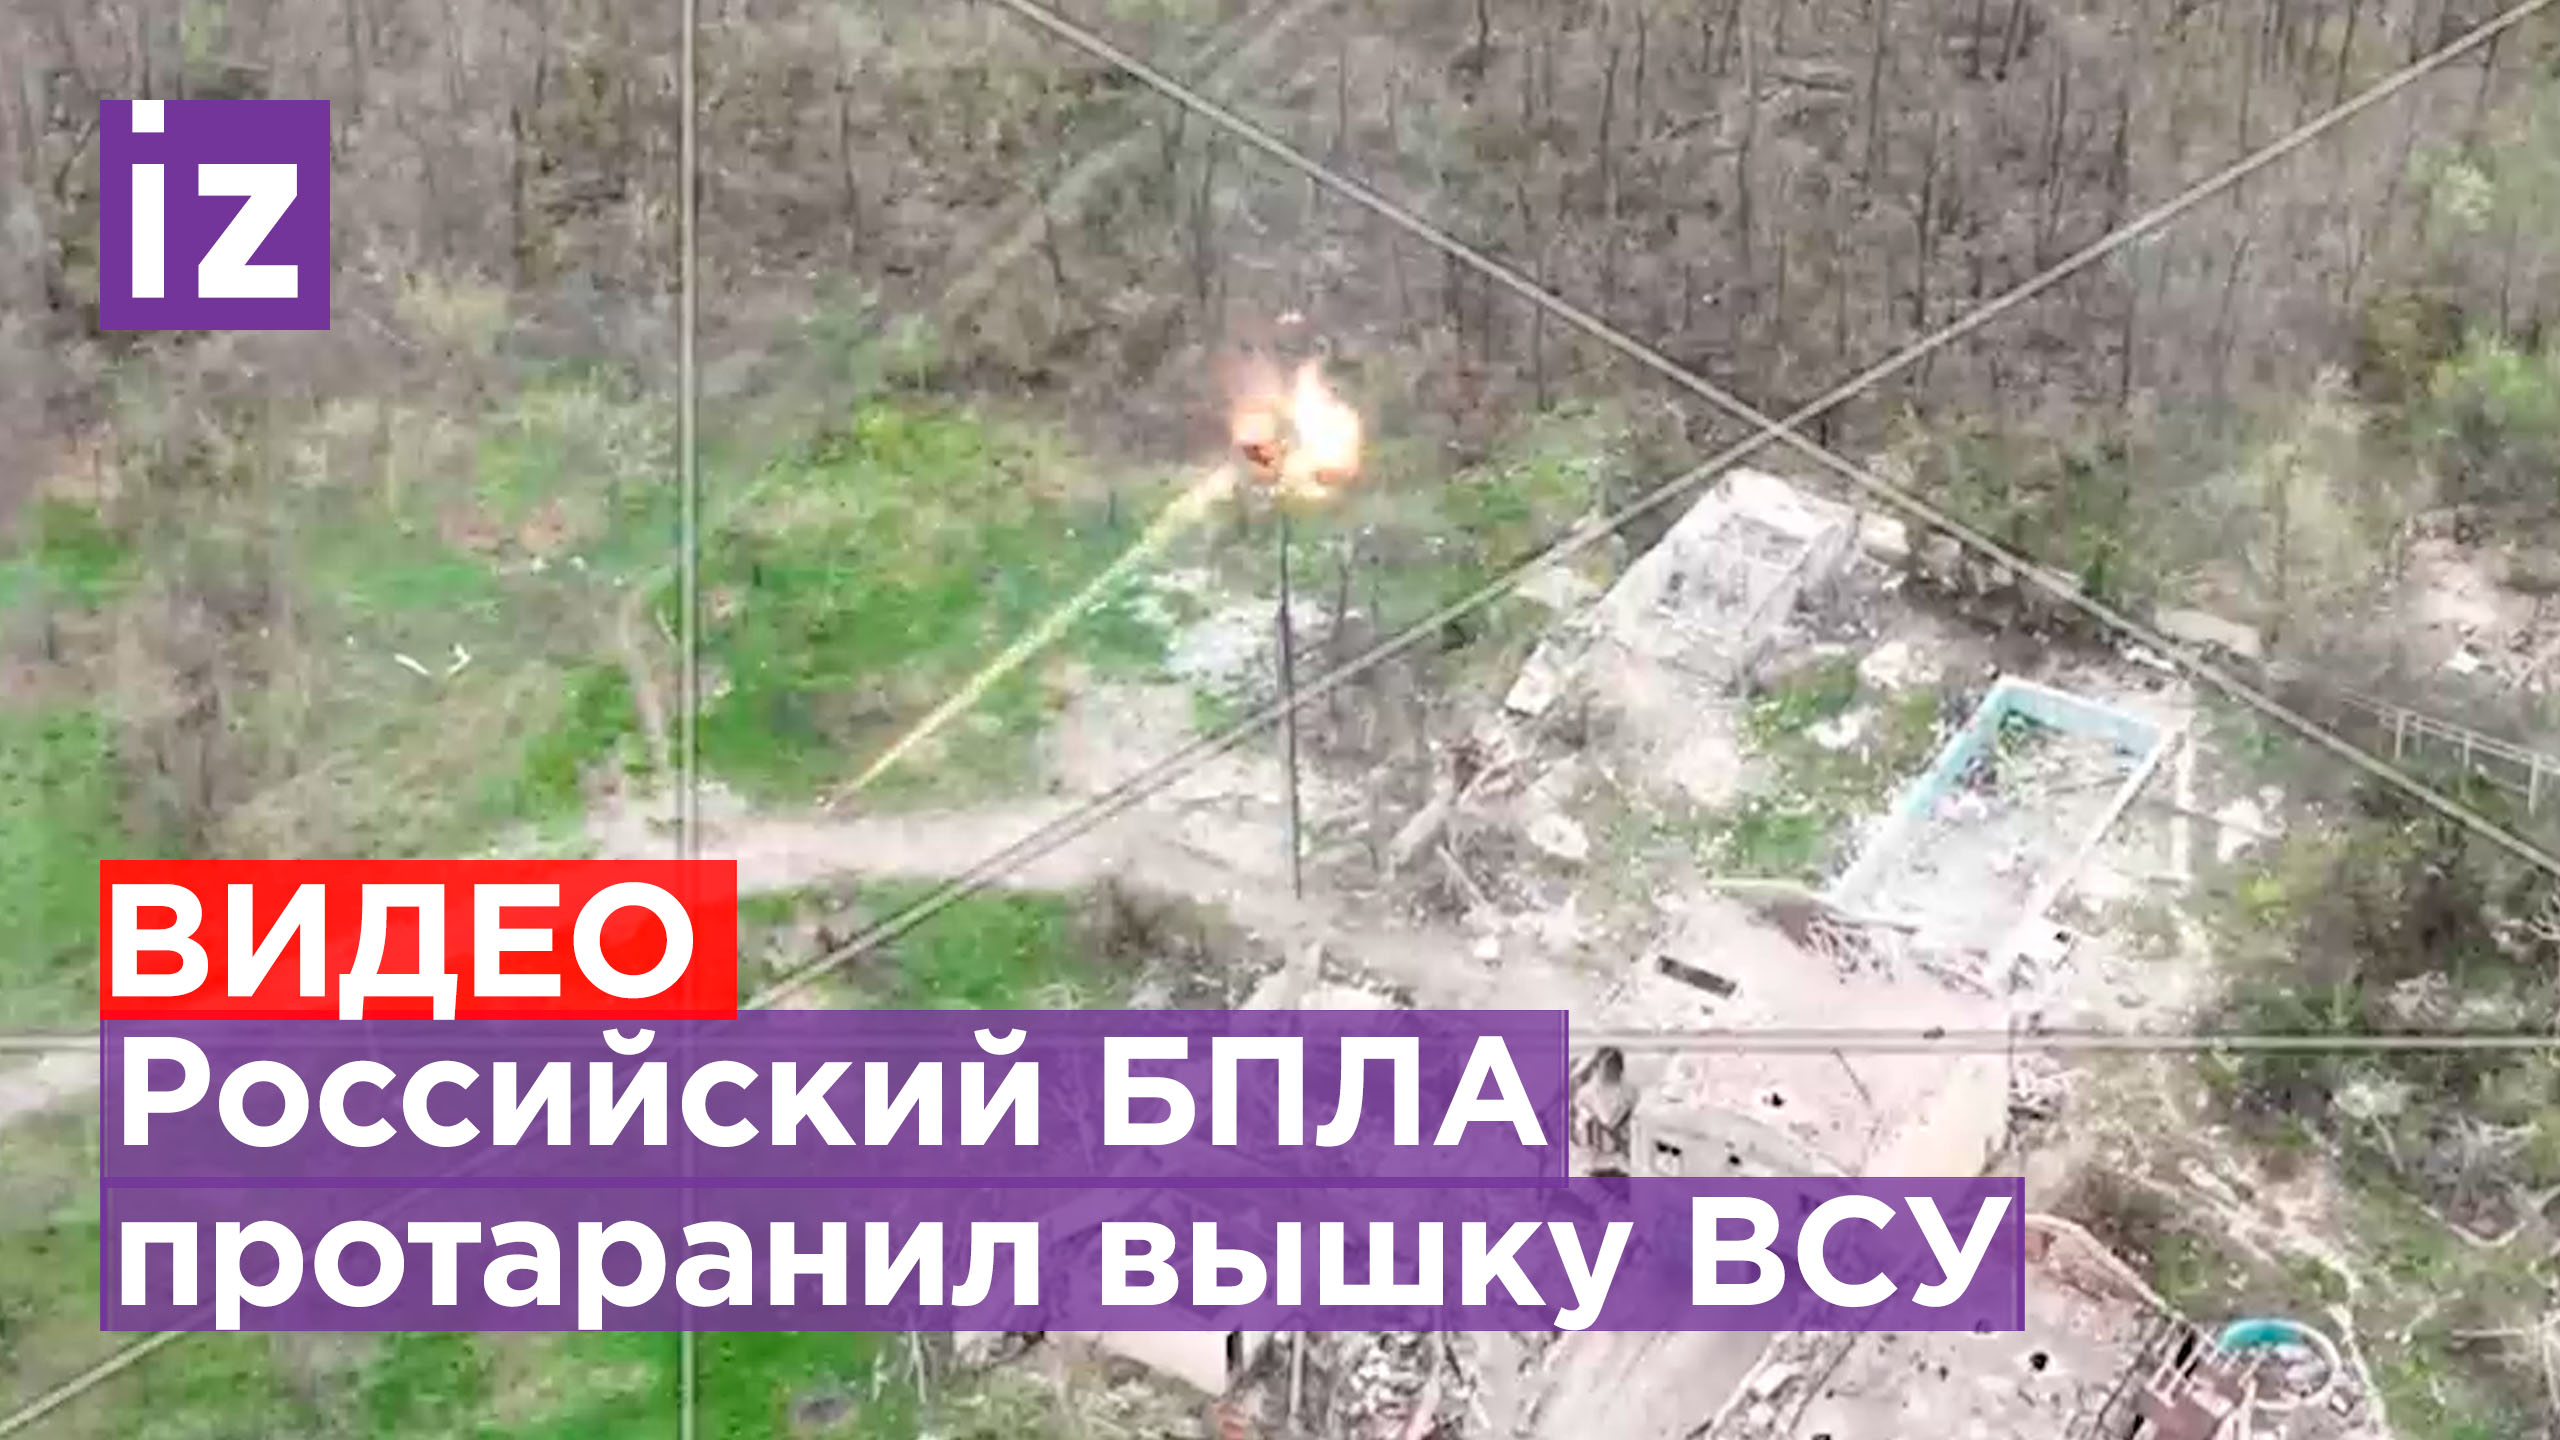 ⚡️ЭКСКЛЮЗИВ ИЗВЕСТИЙ⚡️ Российские беспилотники уничтожили вышку ВСУ на Авдеевском направлении